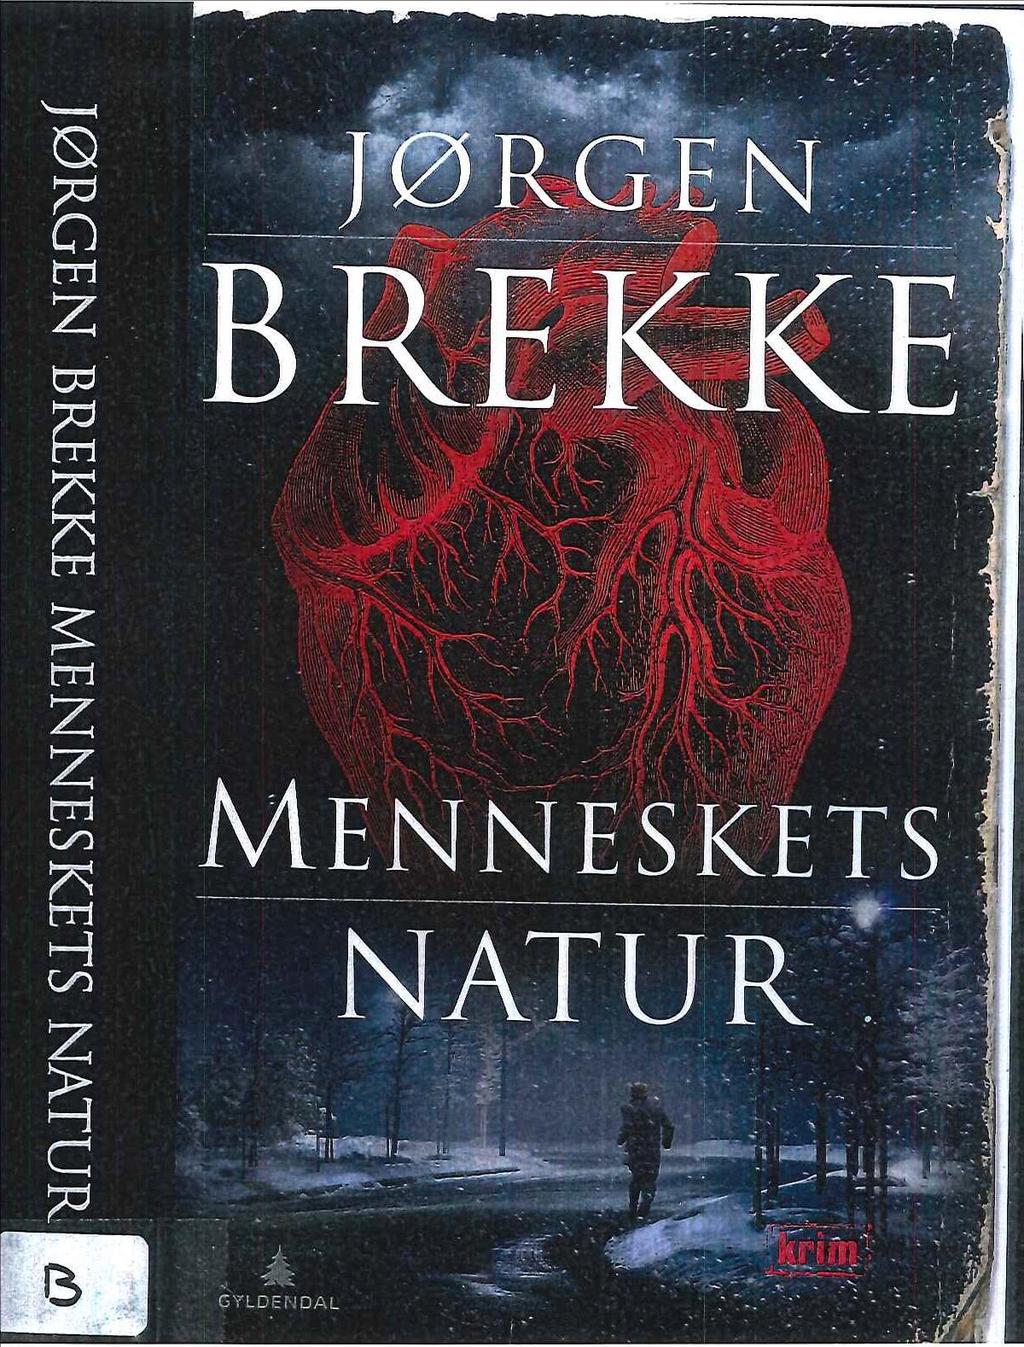 Tekst 2: Jørgen Brekke, Menneskets natur,